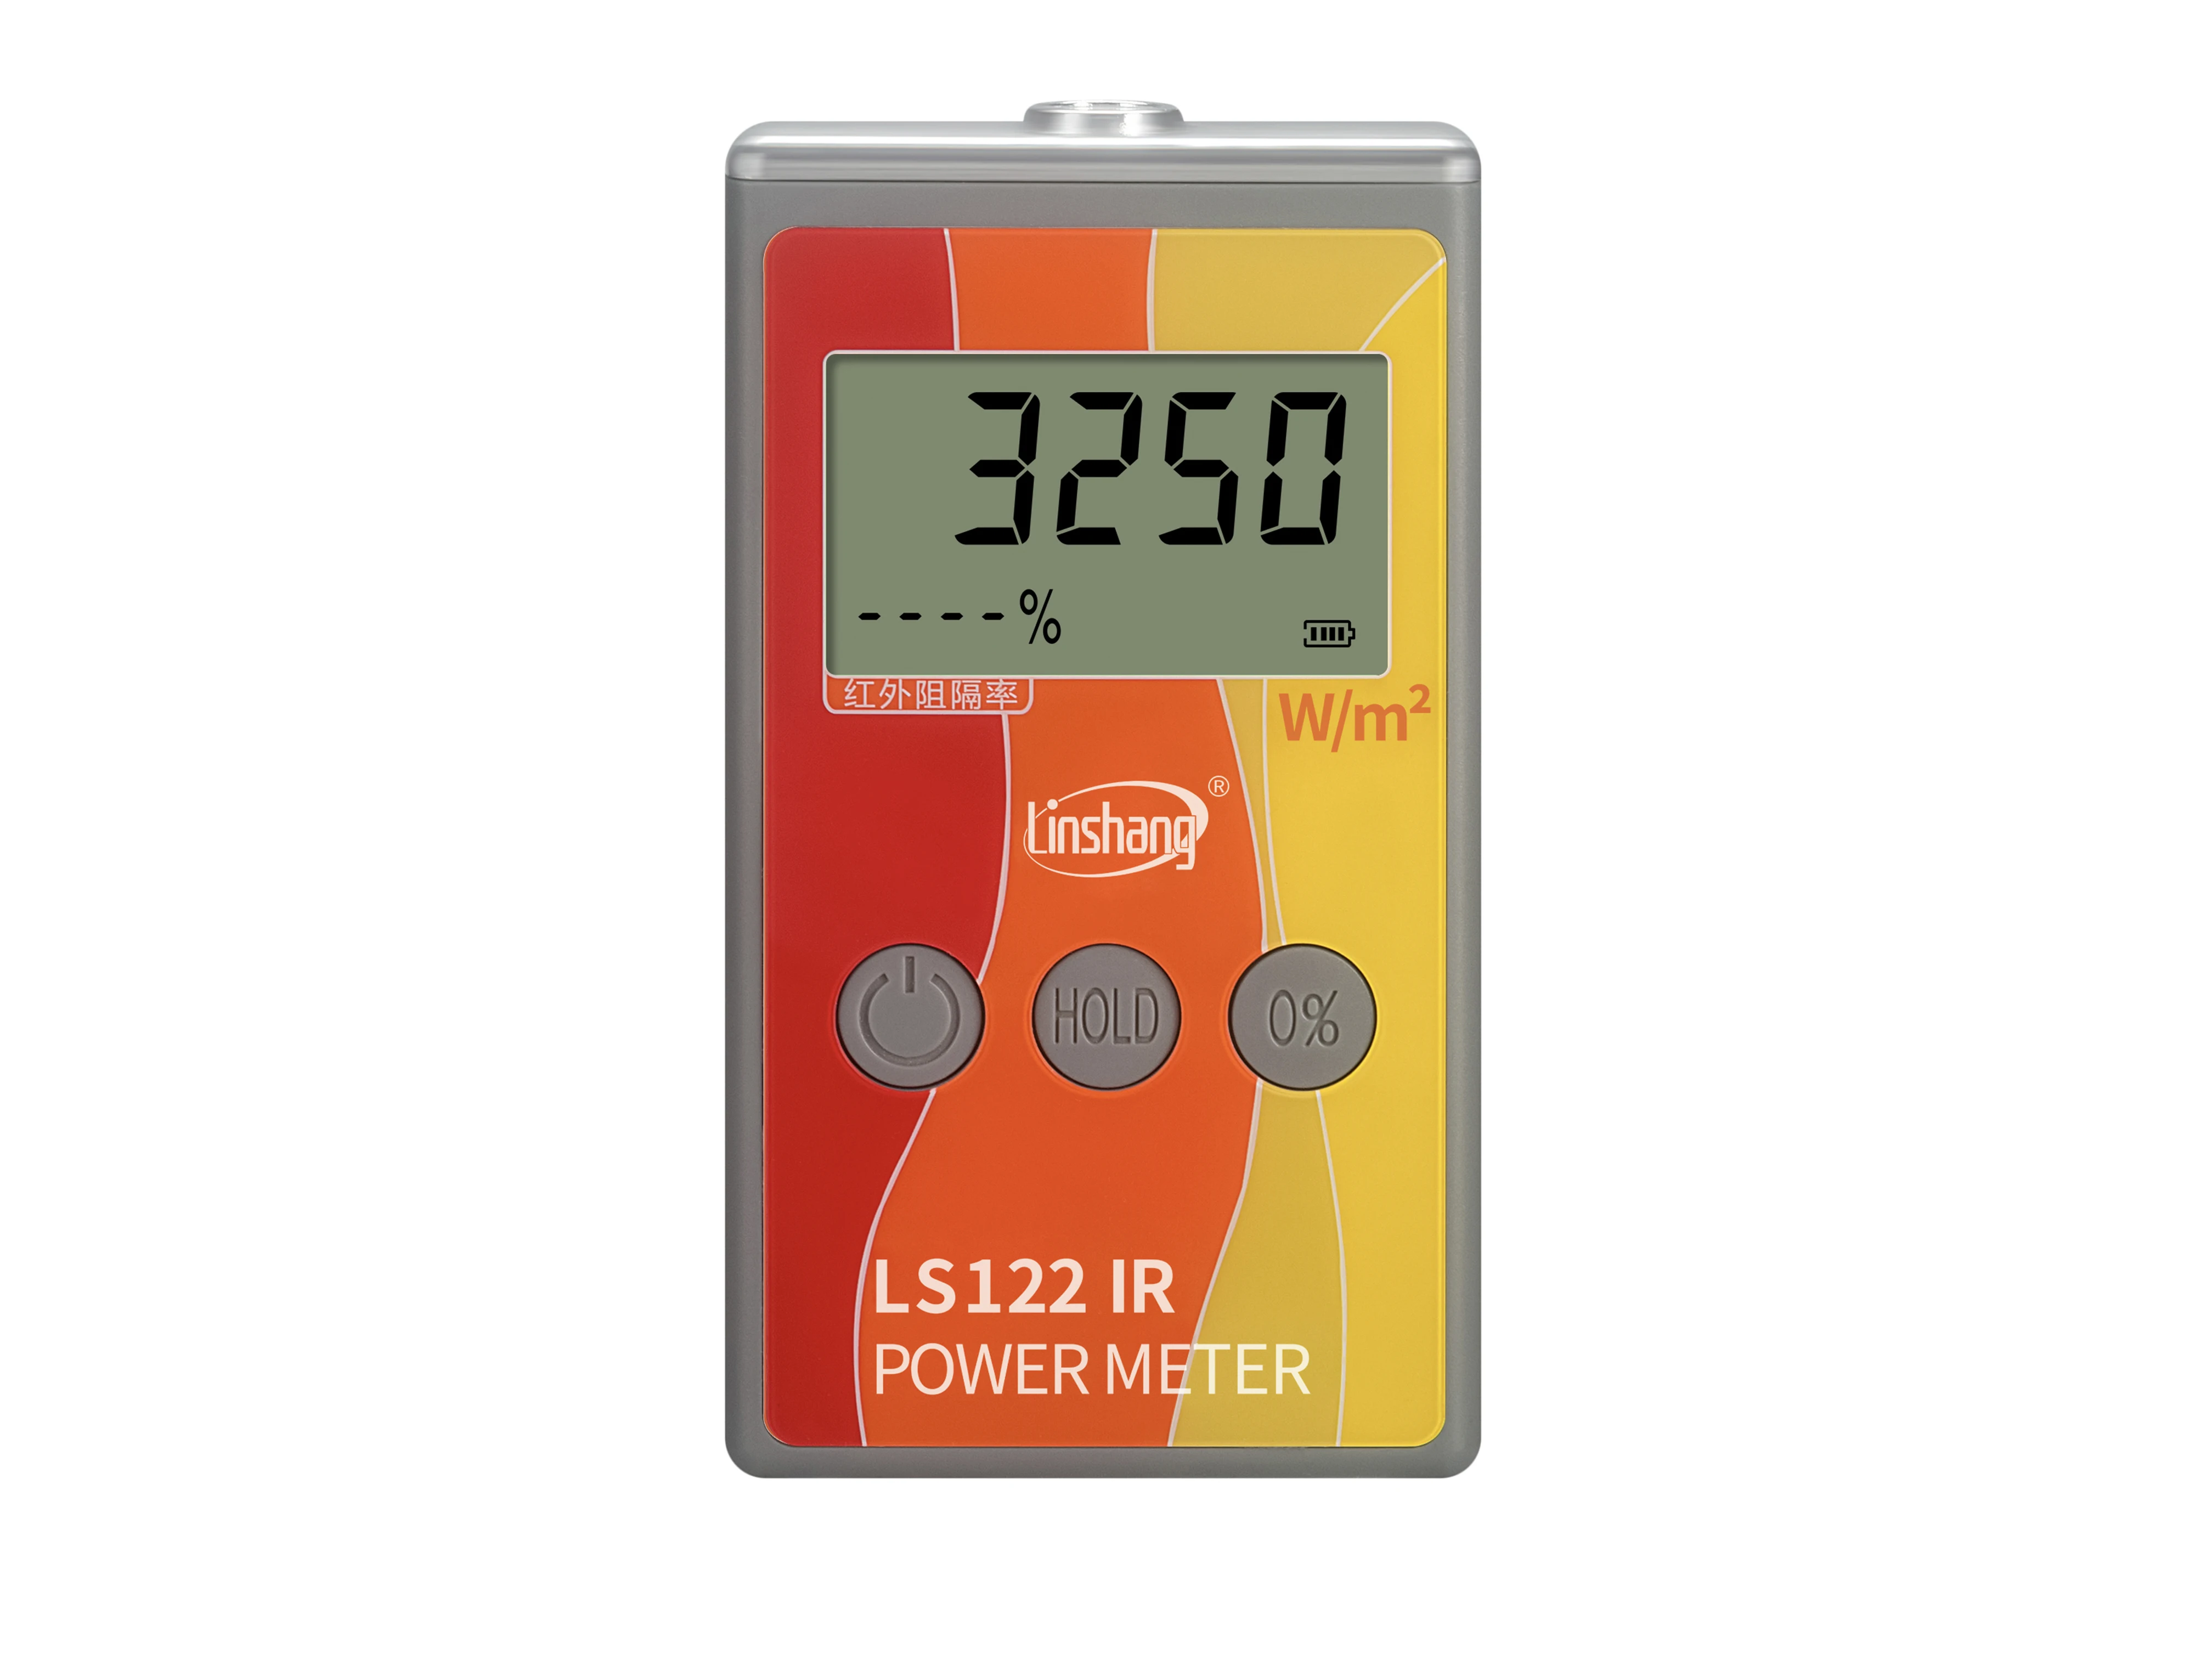 

LS122 ручной ИК-измеритель мощности, тестирование инфракрасной интенсивности с яркостью с ИК-отмыканием, теплоизоляция со скоростью от 1000 до ...